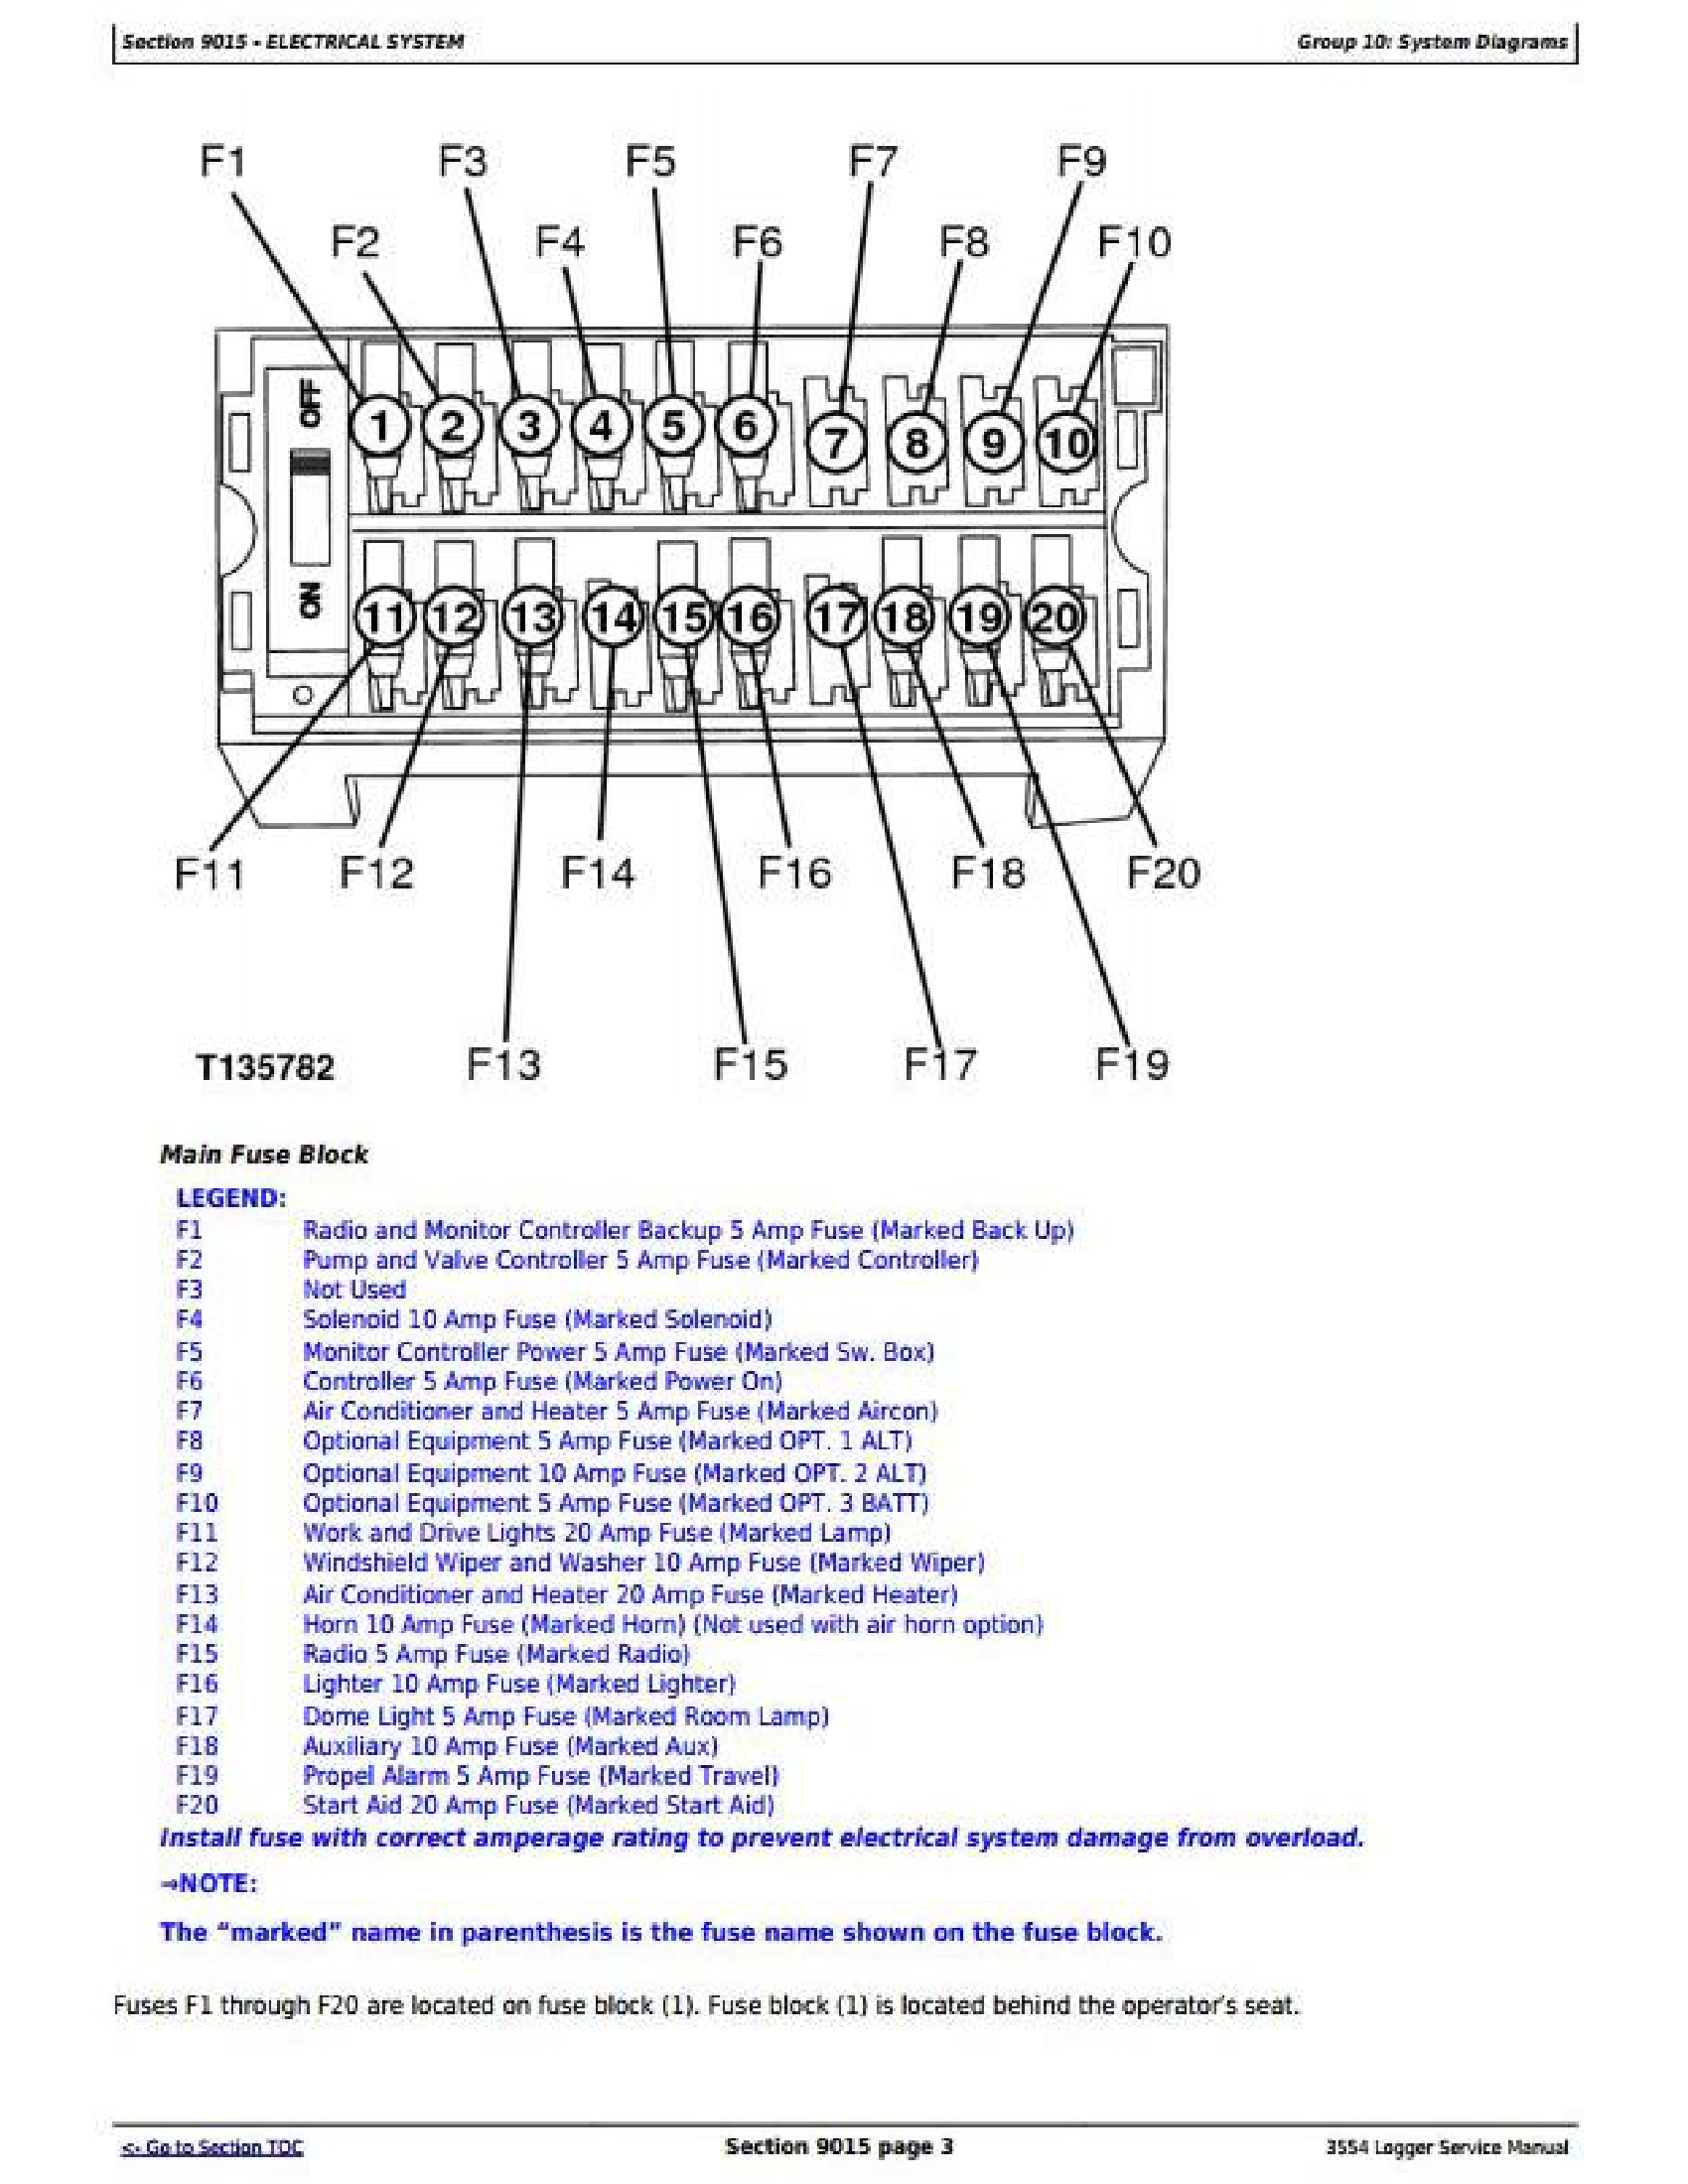 John Deere 1YNWL56 manual pdf